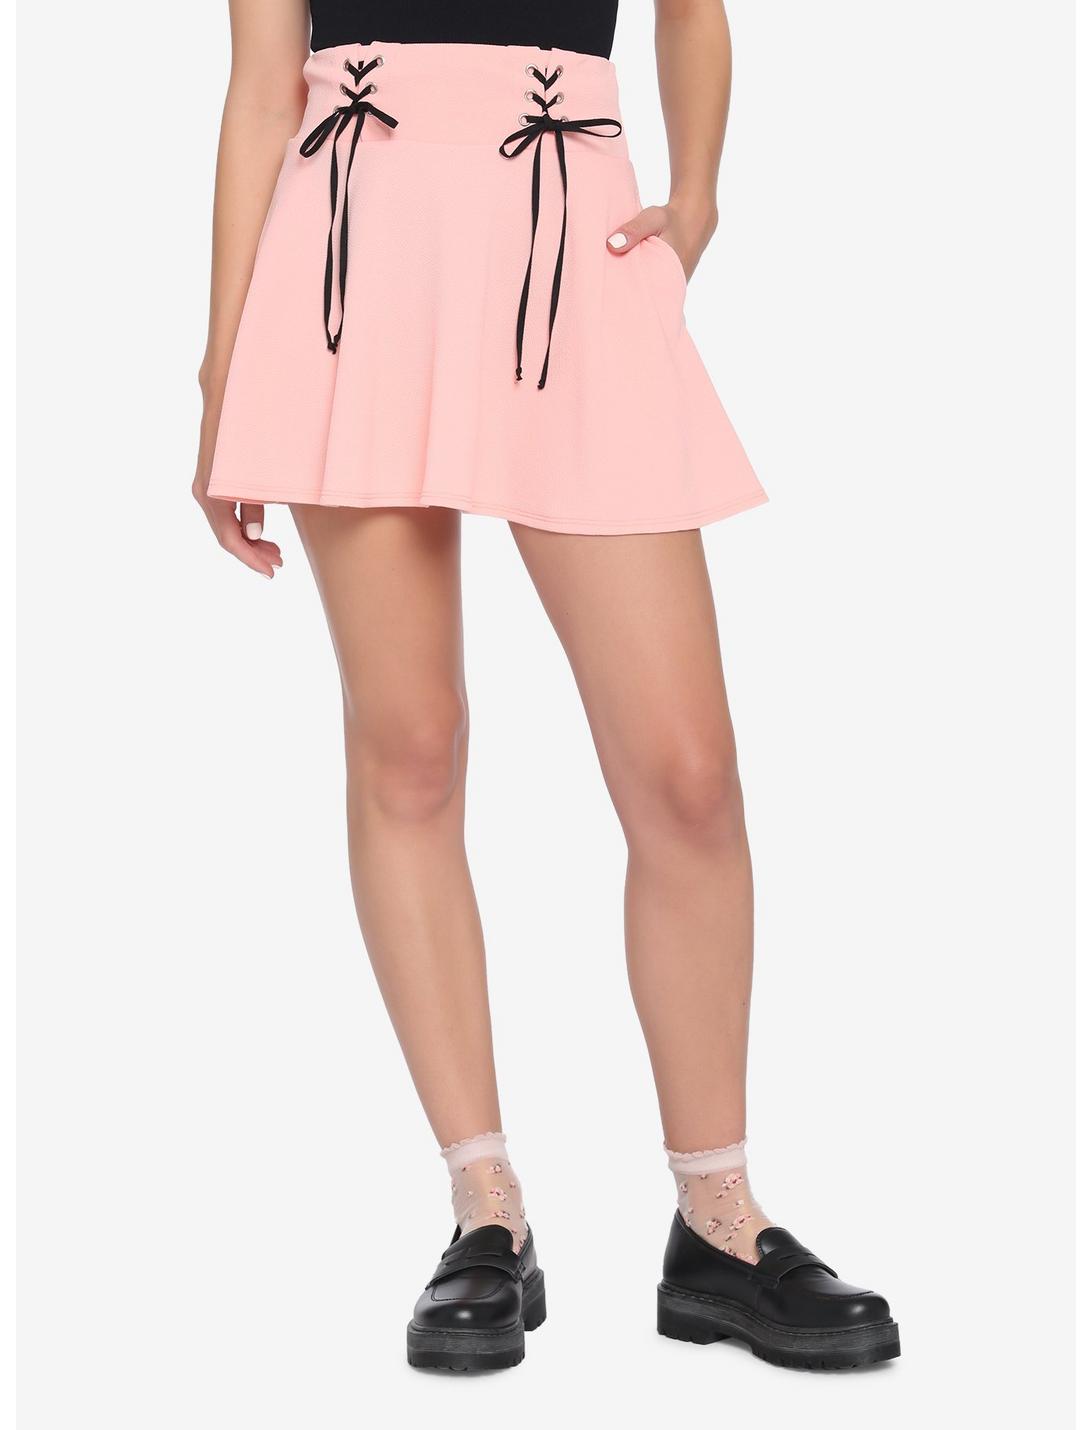 Pastel Pink Lace-Up Skater Skirt, PINK, hi-res